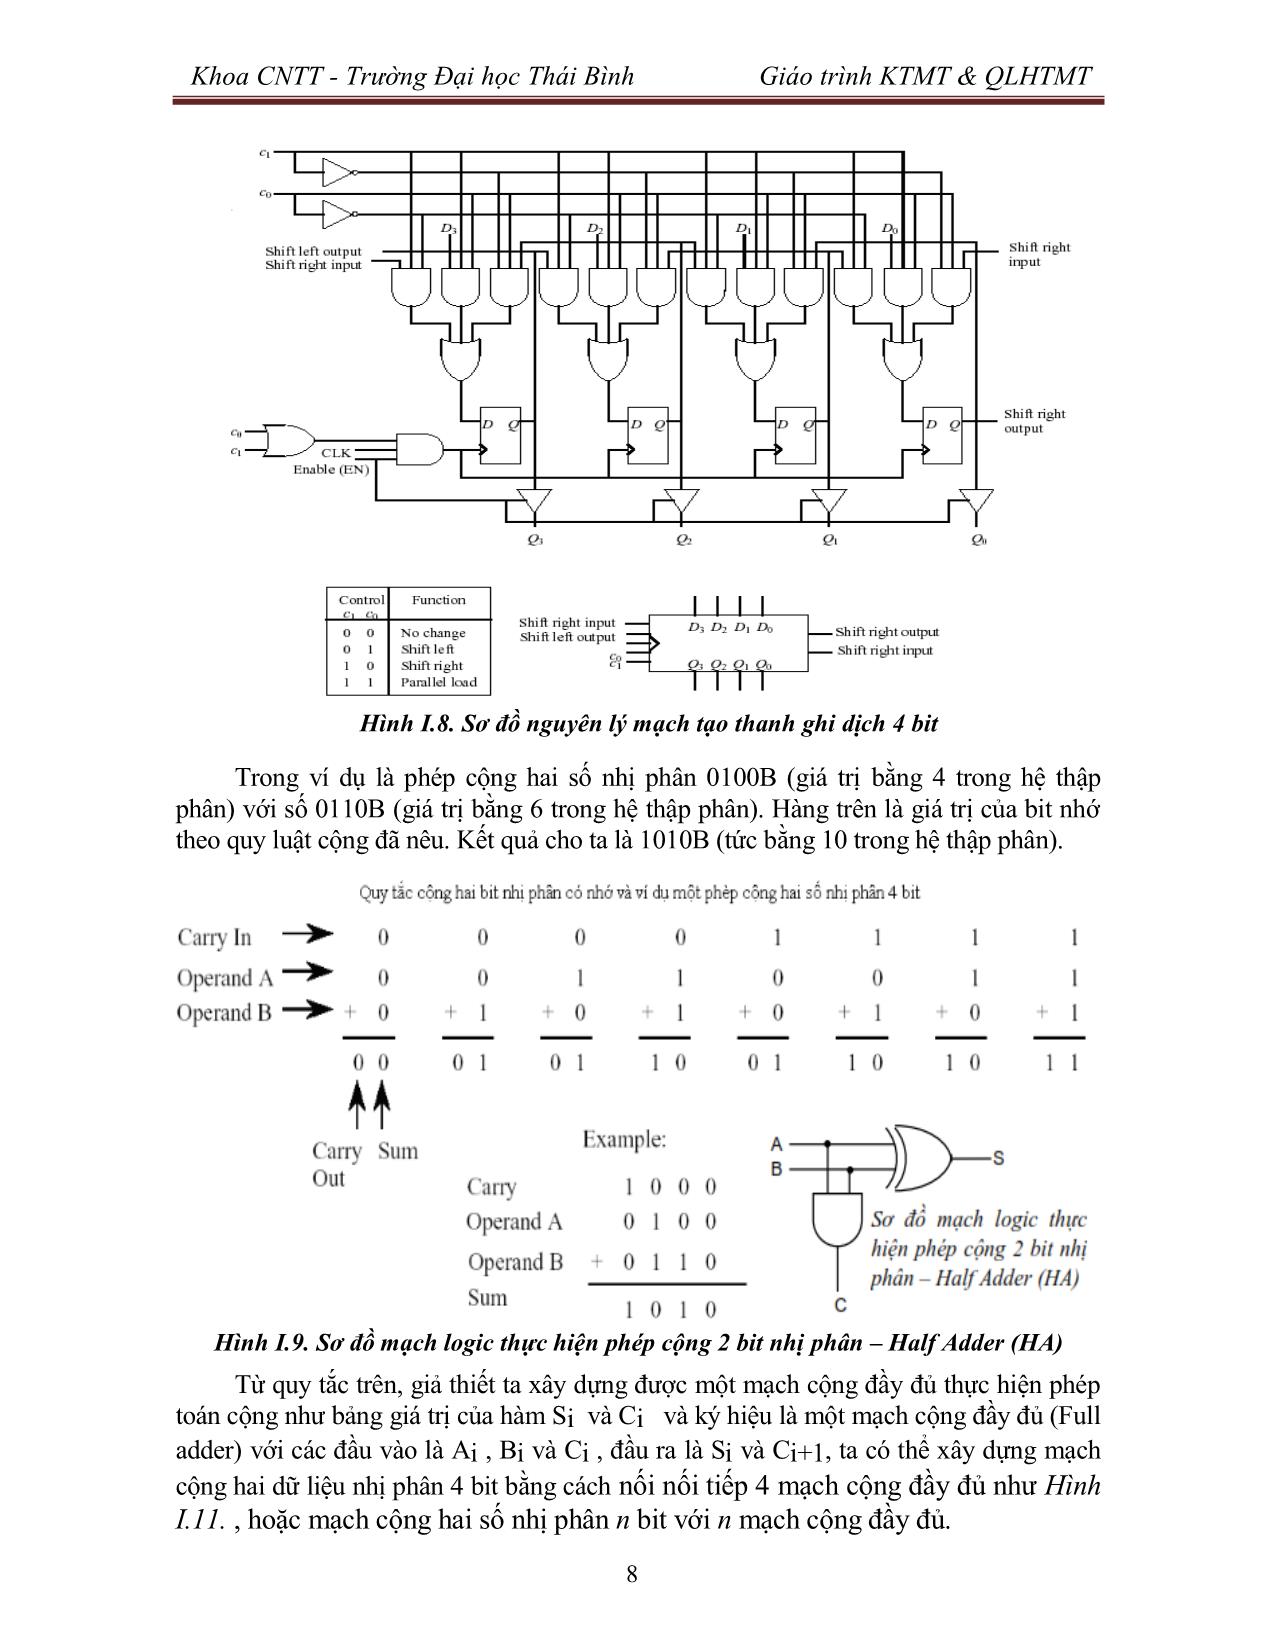 Giáo trình Kiến trúc máy tính & Quản lý hệ thống máy tính (Phần 1) trang 9